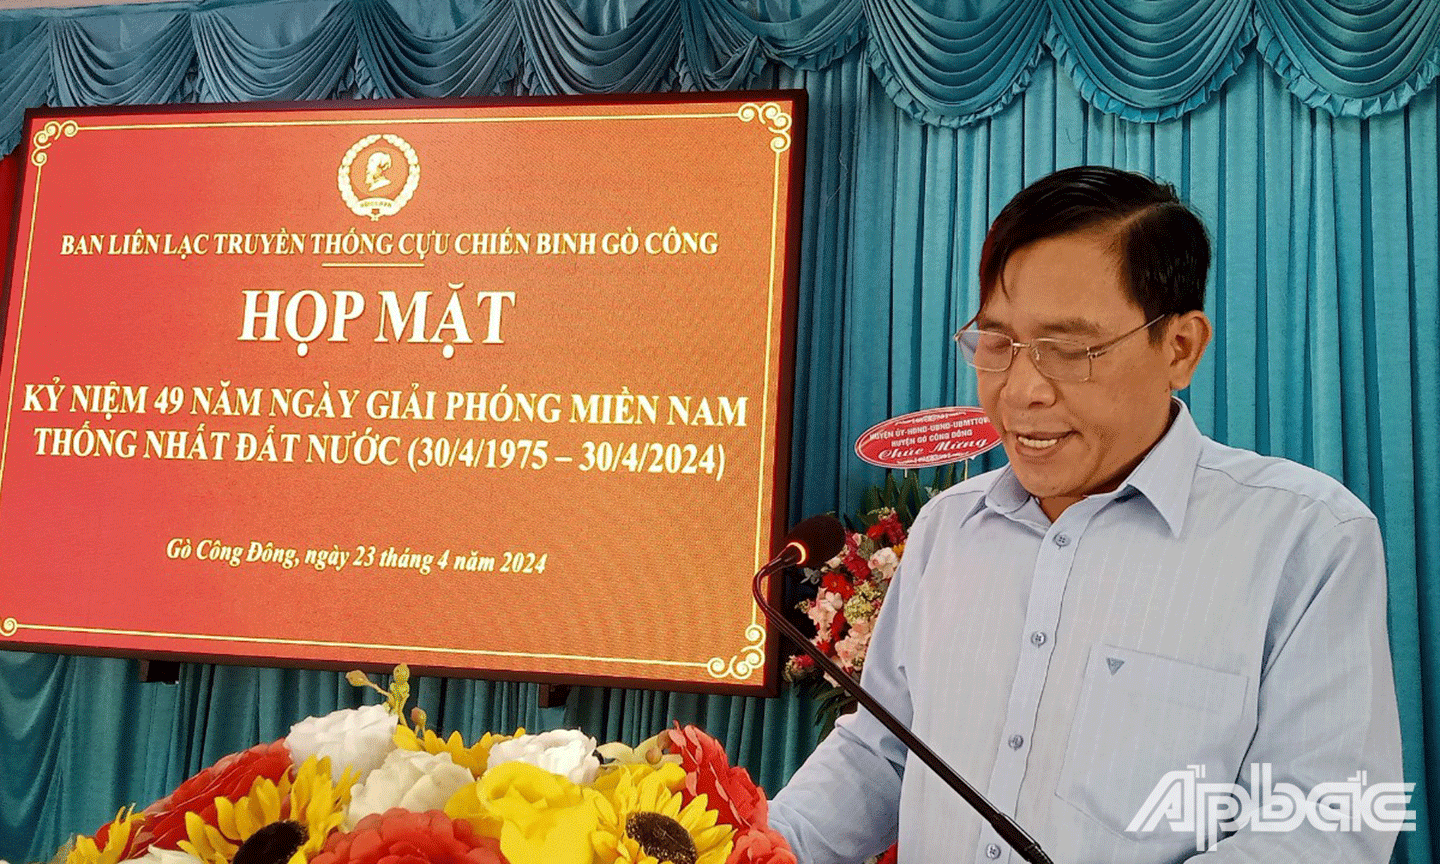 đồng chí Ngô Huỳnh Quang Thái Bí thư Huyện ủy Gò Công Đông phát biểu tại buổi họp mặt